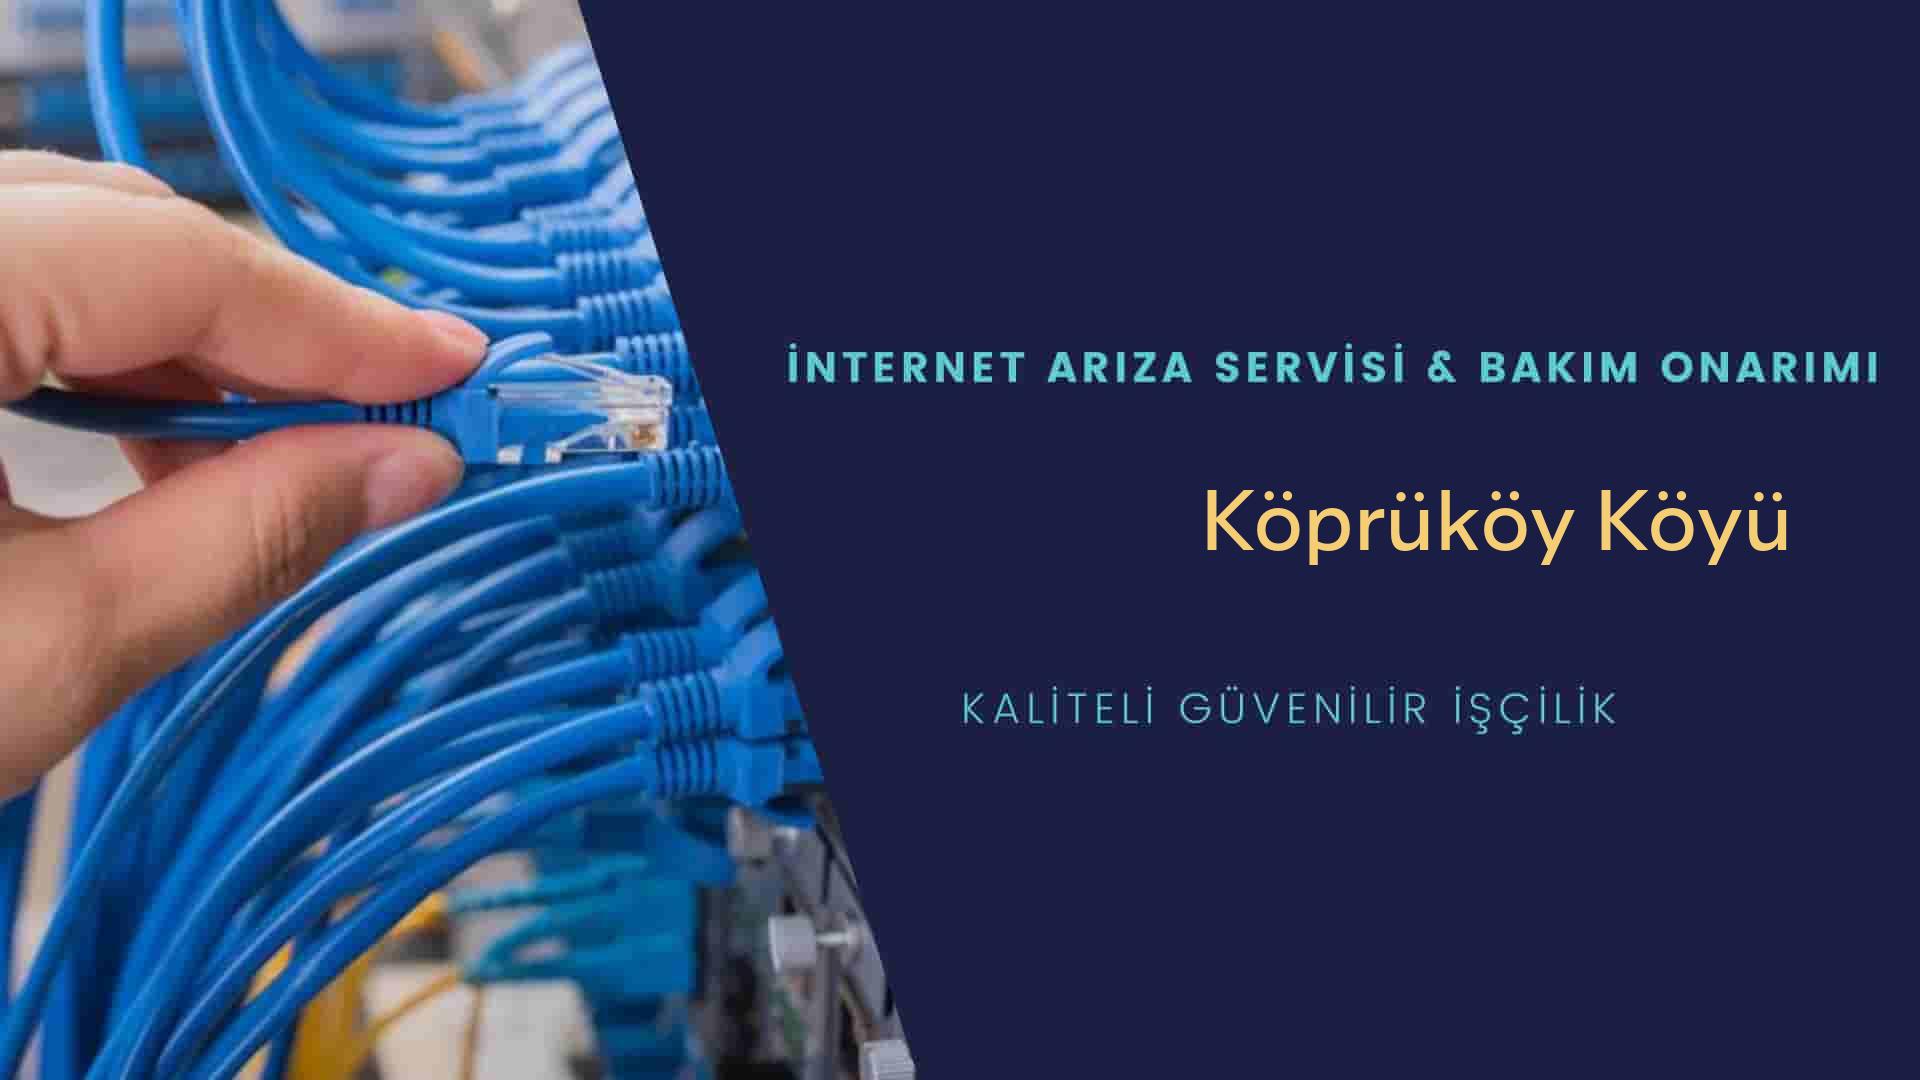 Köprüköy Köyü internet kablosu çekimi yapan yerler veya elektrikçiler mi? arıyorsunuz doğru yerdesiniz o zaman sizlere 7/24 yardımcı olacak profesyonel ustalarımız bir telefon kadar yakındır size.